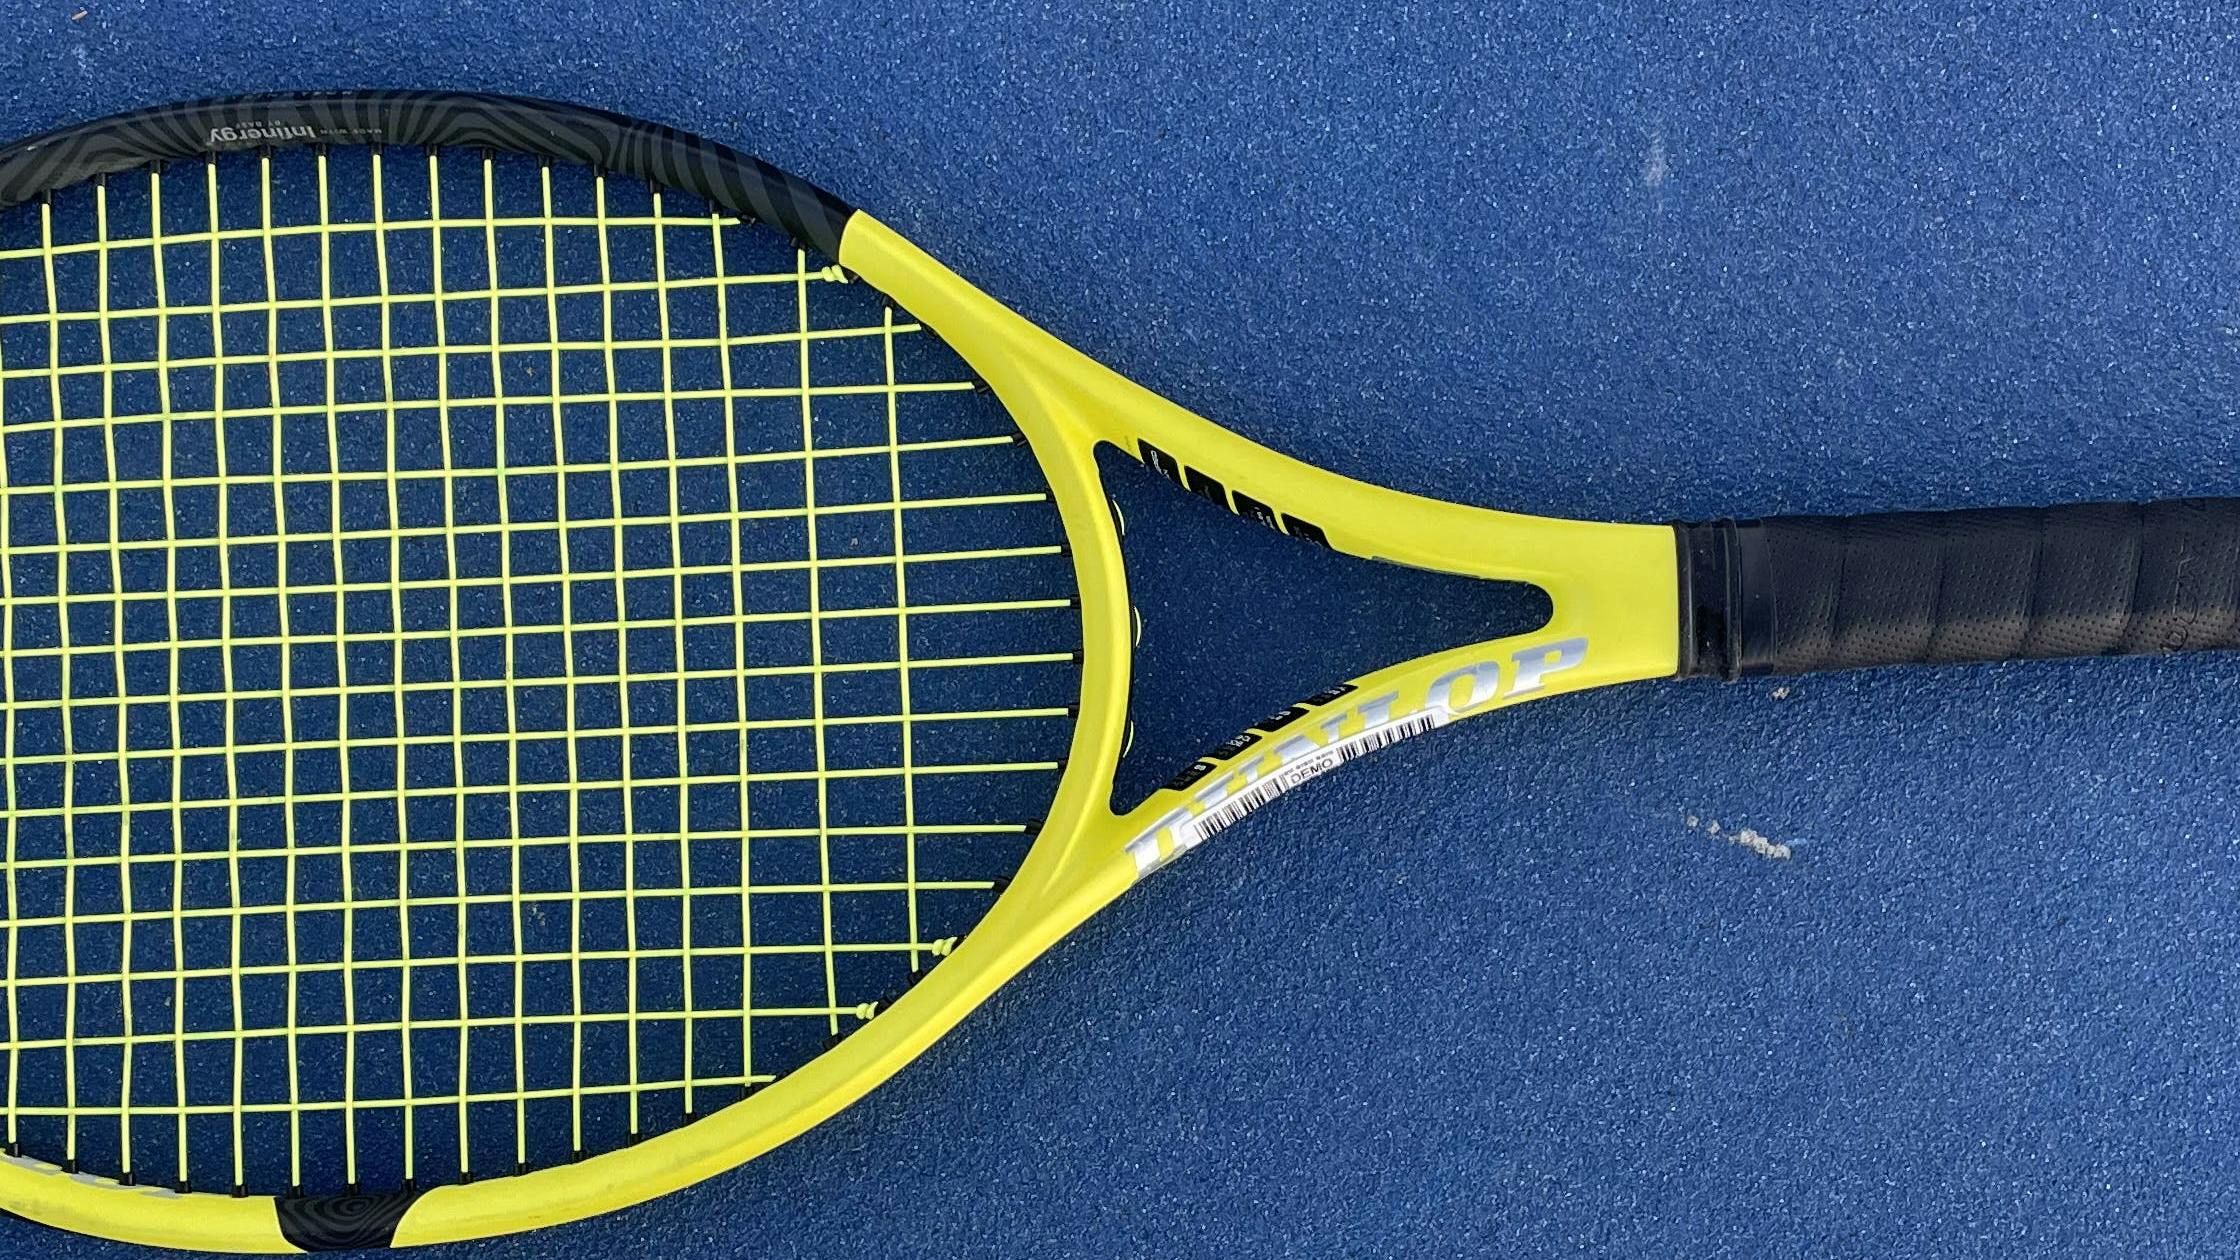 The Dunlop SX 300 Racquet (2022) · Unstrung.